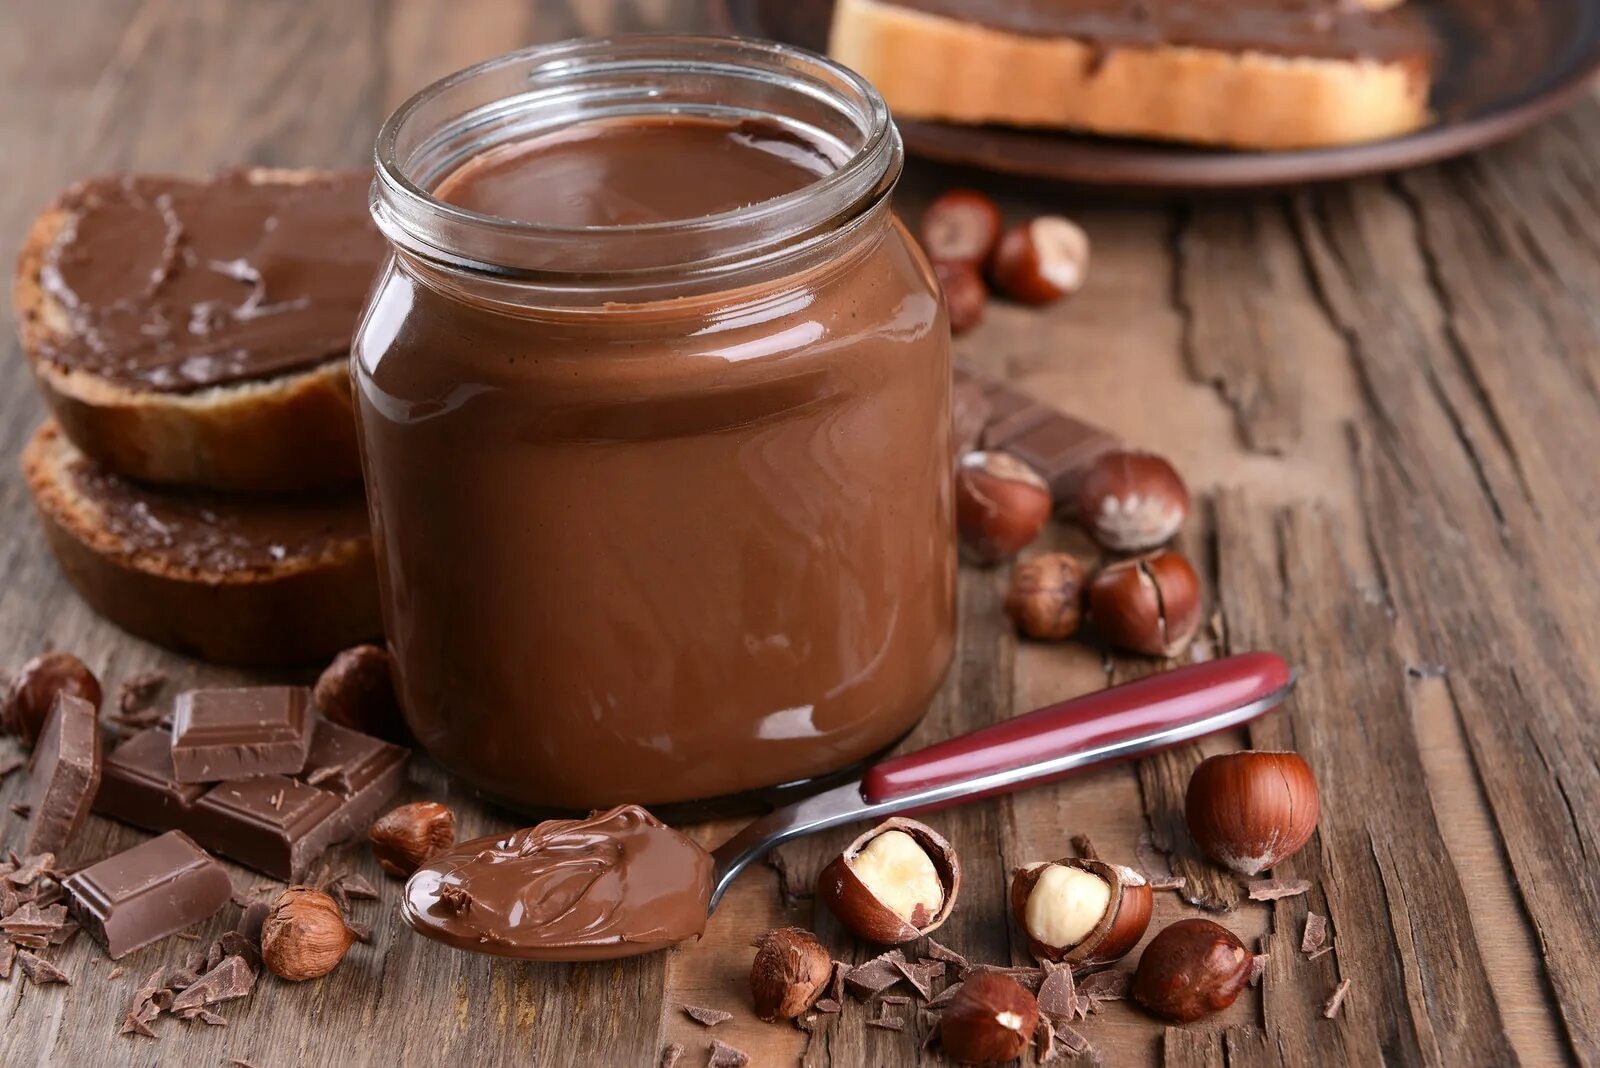 Шоколадная паста Chocolate Hazelnut. Шоколадная паста Chocolate Hazelnut Cream. Шоколадный крем в банке. Шоколадный крем Nutella. Шоколадная паста из какао молока